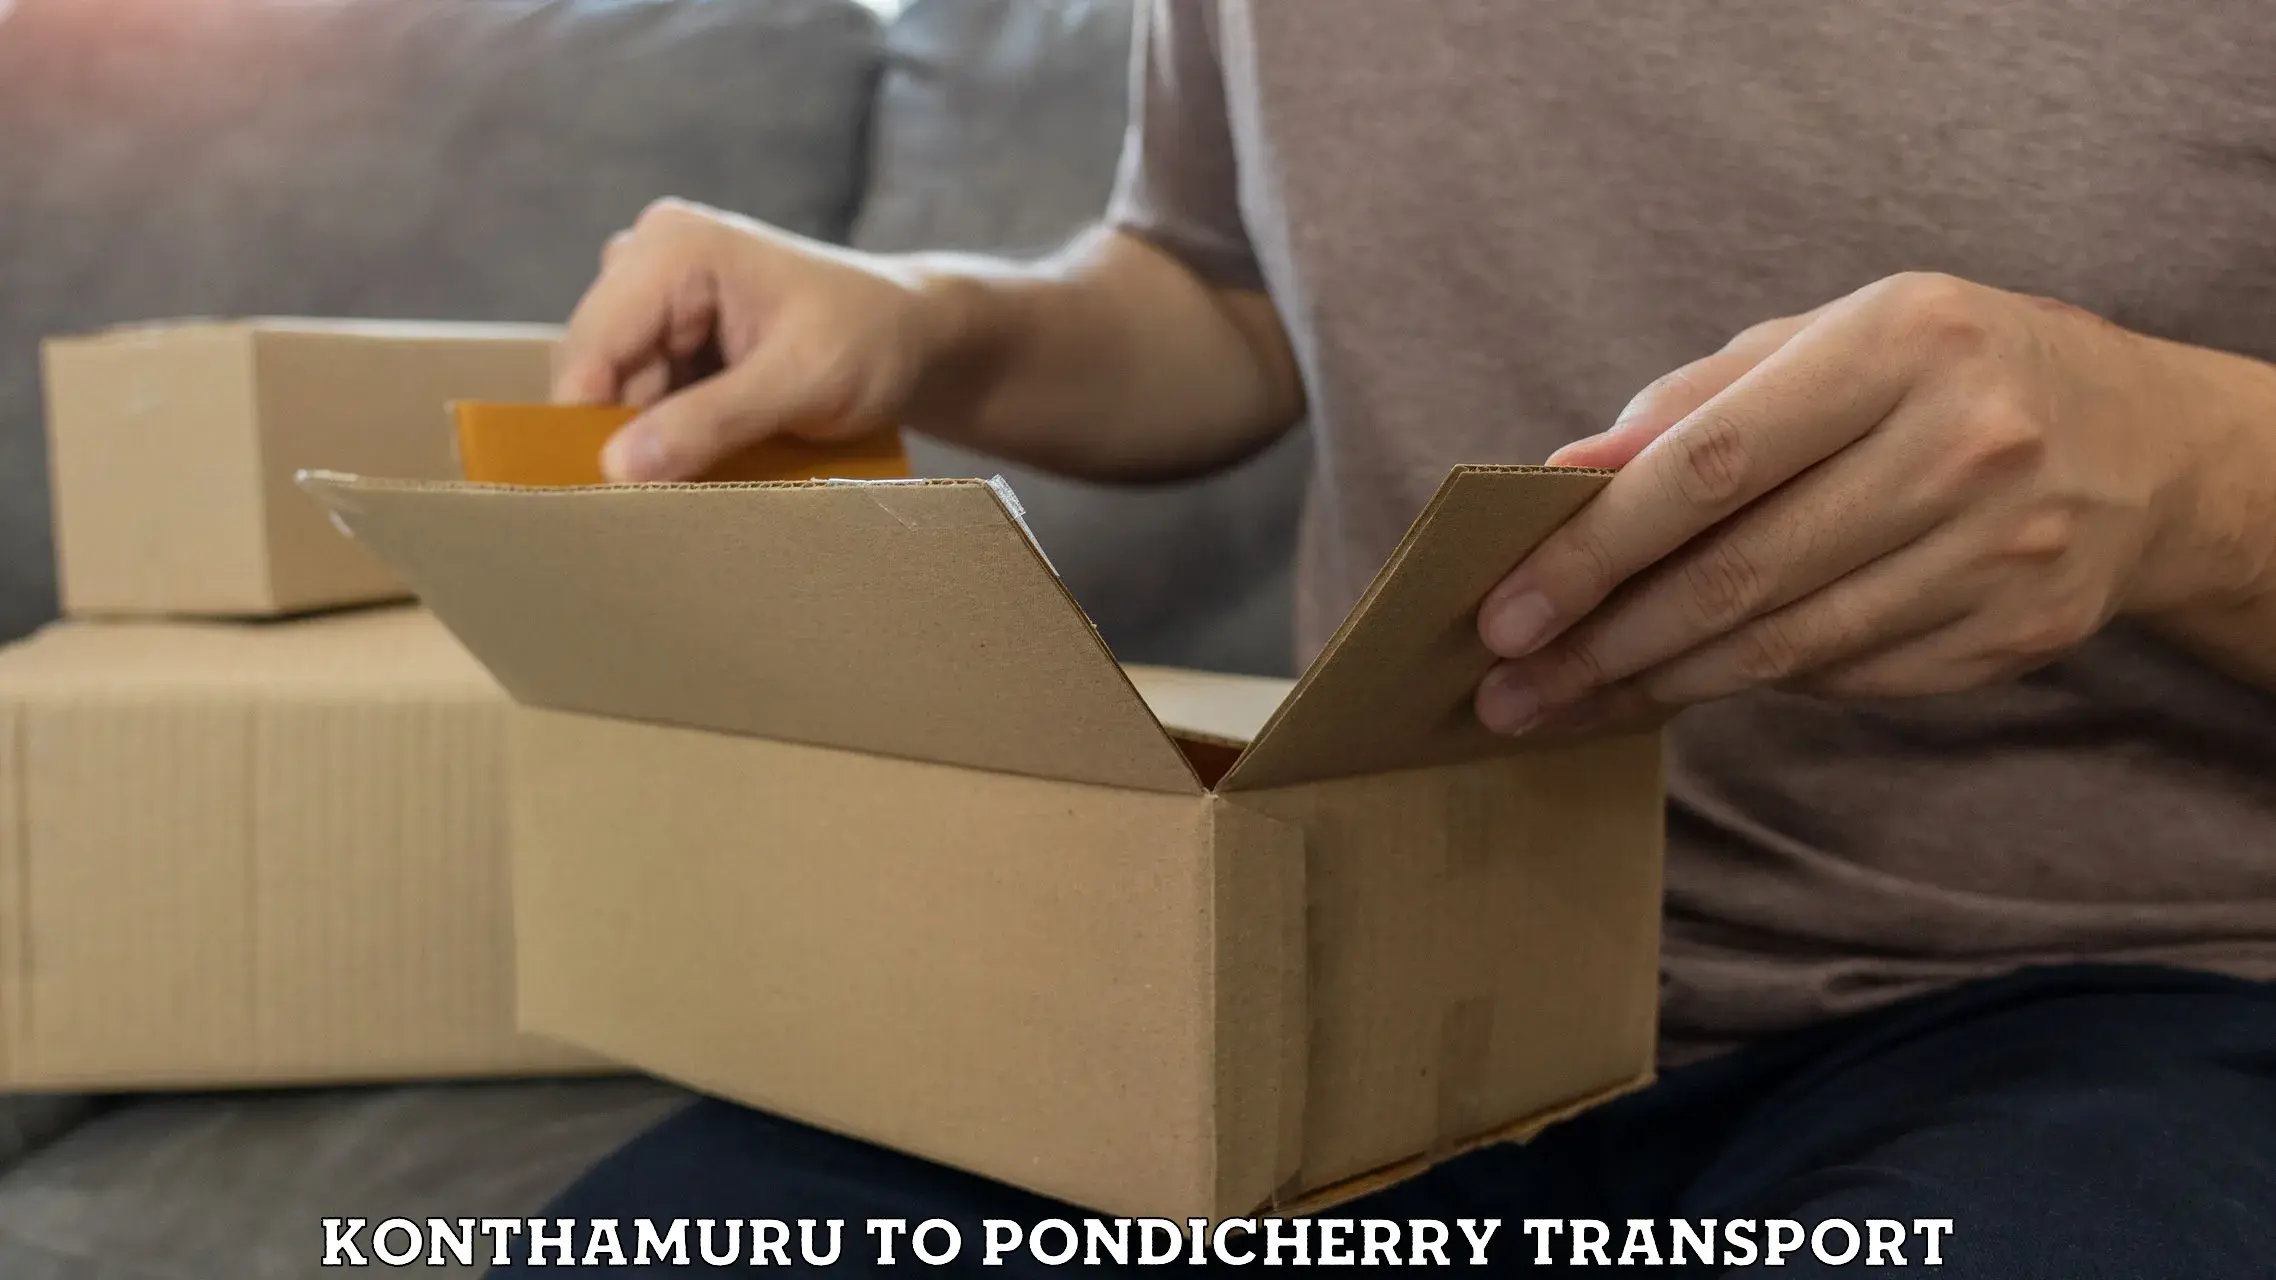 Online transport service Konthamuru to Pondicherry